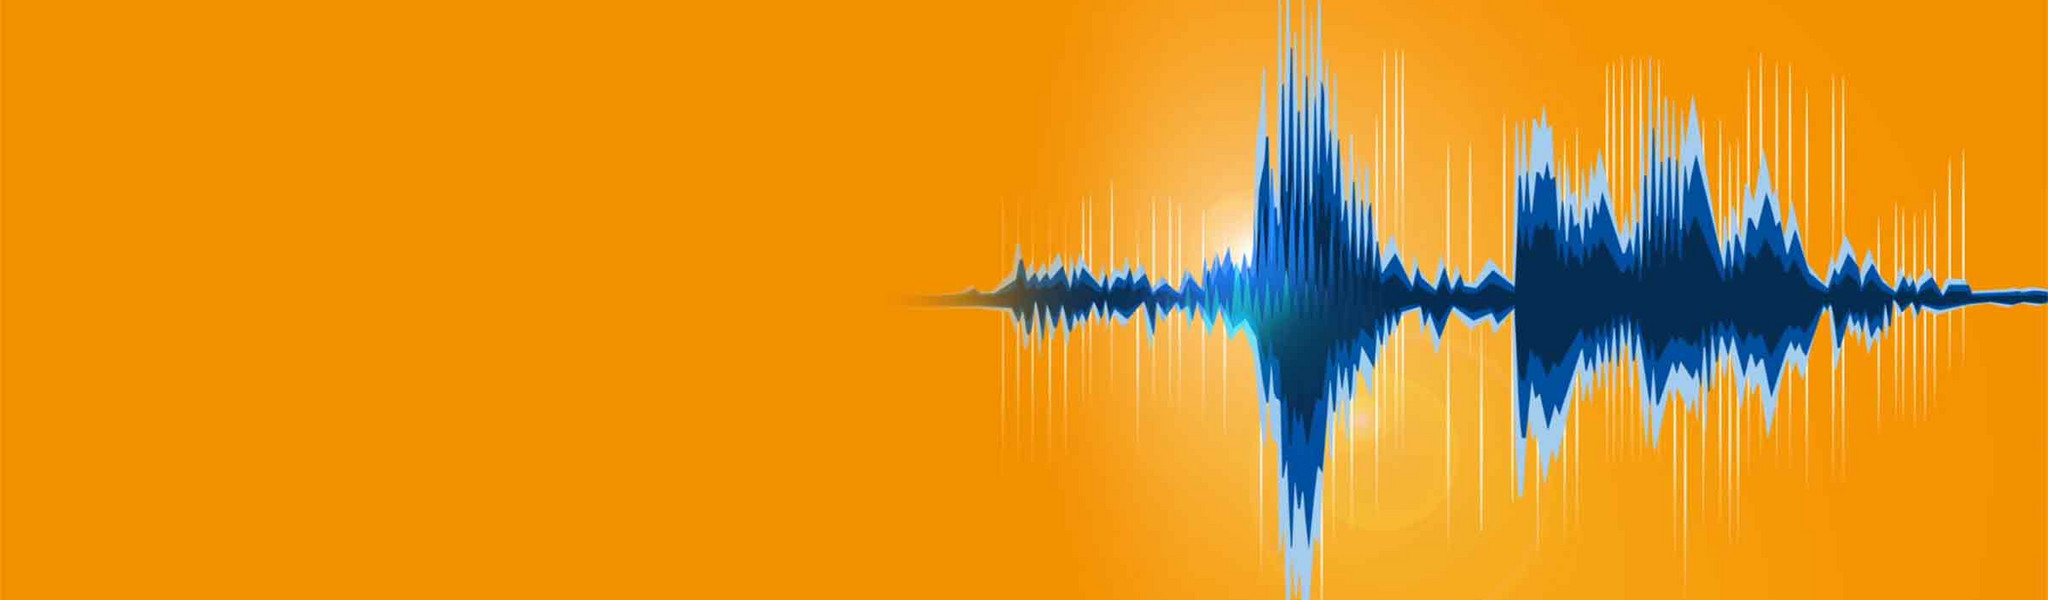 Dunkel- bis hellblaue Grafik einer Tonspur-Frequenz auf orangem Hintergund.